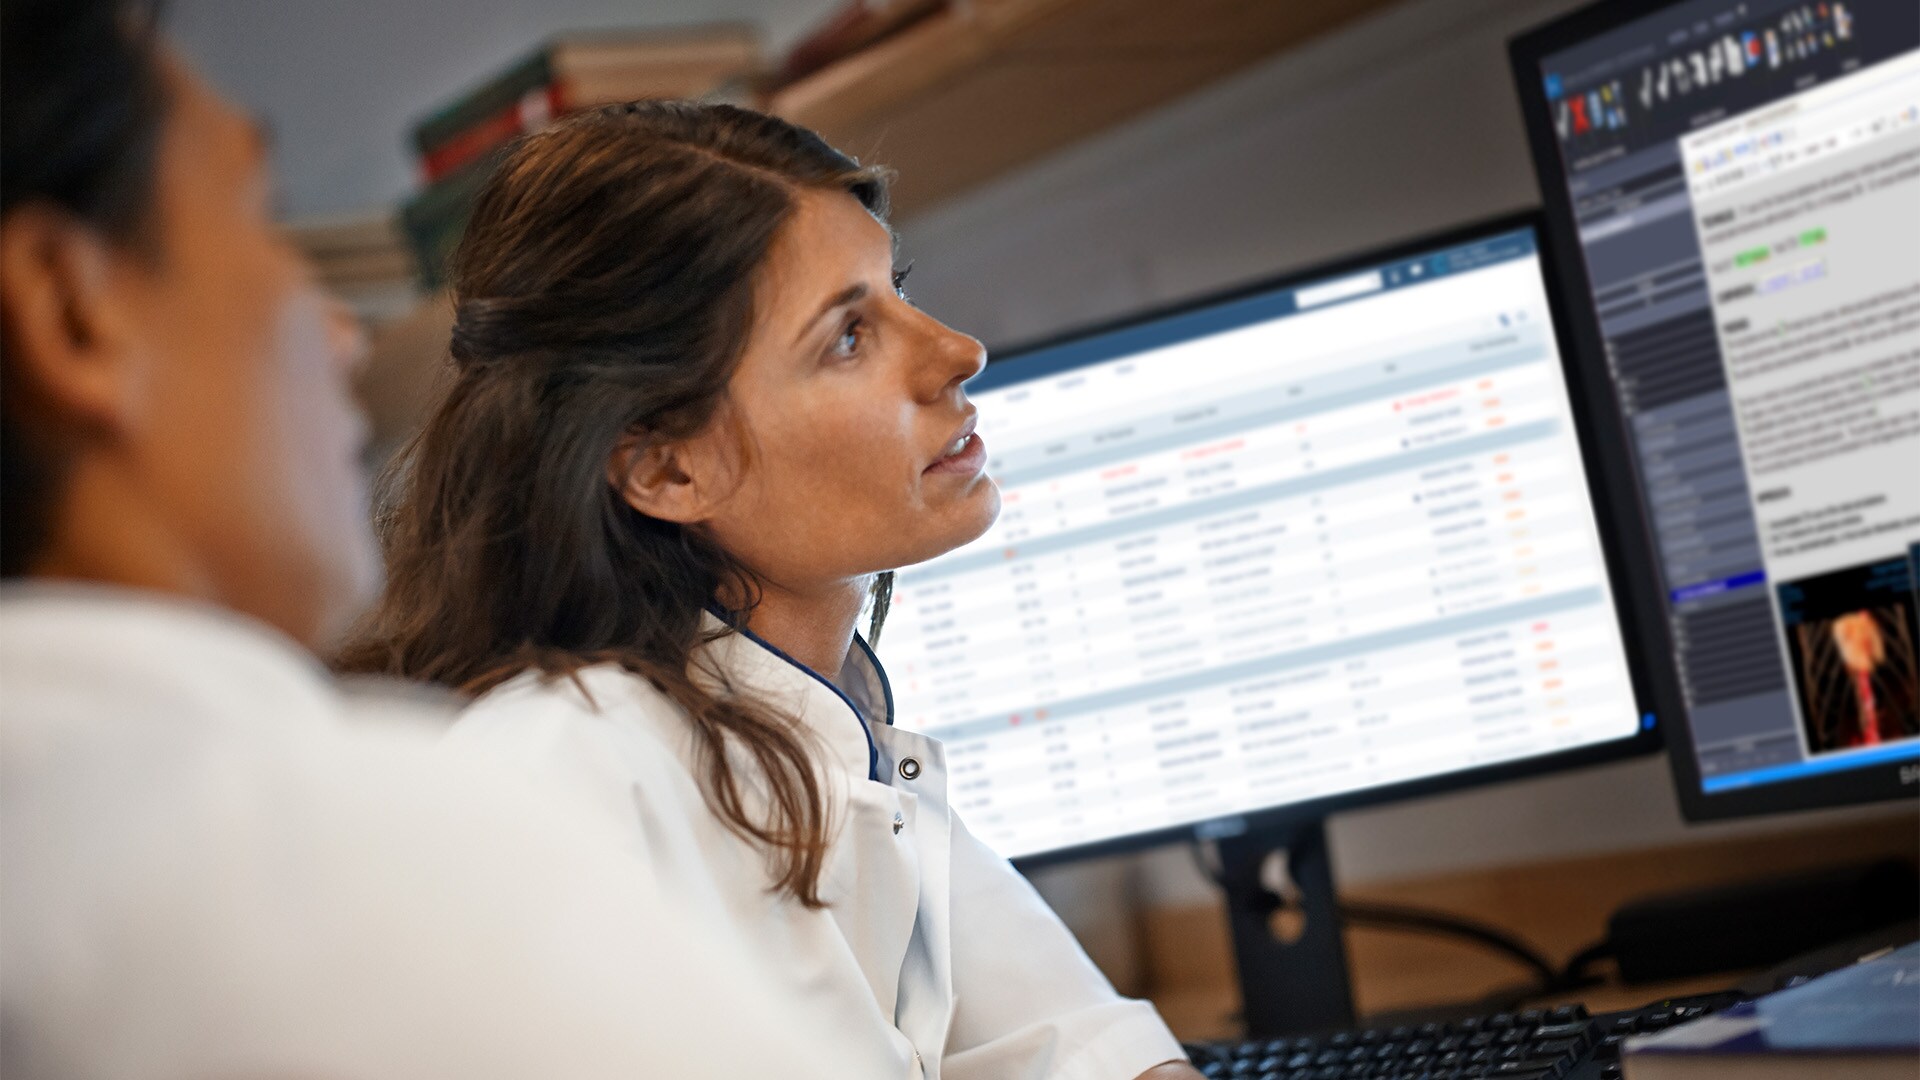 El Centro de Tratamiento e Investigación sobre Cáncer-CTIC, uno de los más grandes de la región, elige las soluciones de informática de salud de Philips para sus operaciones